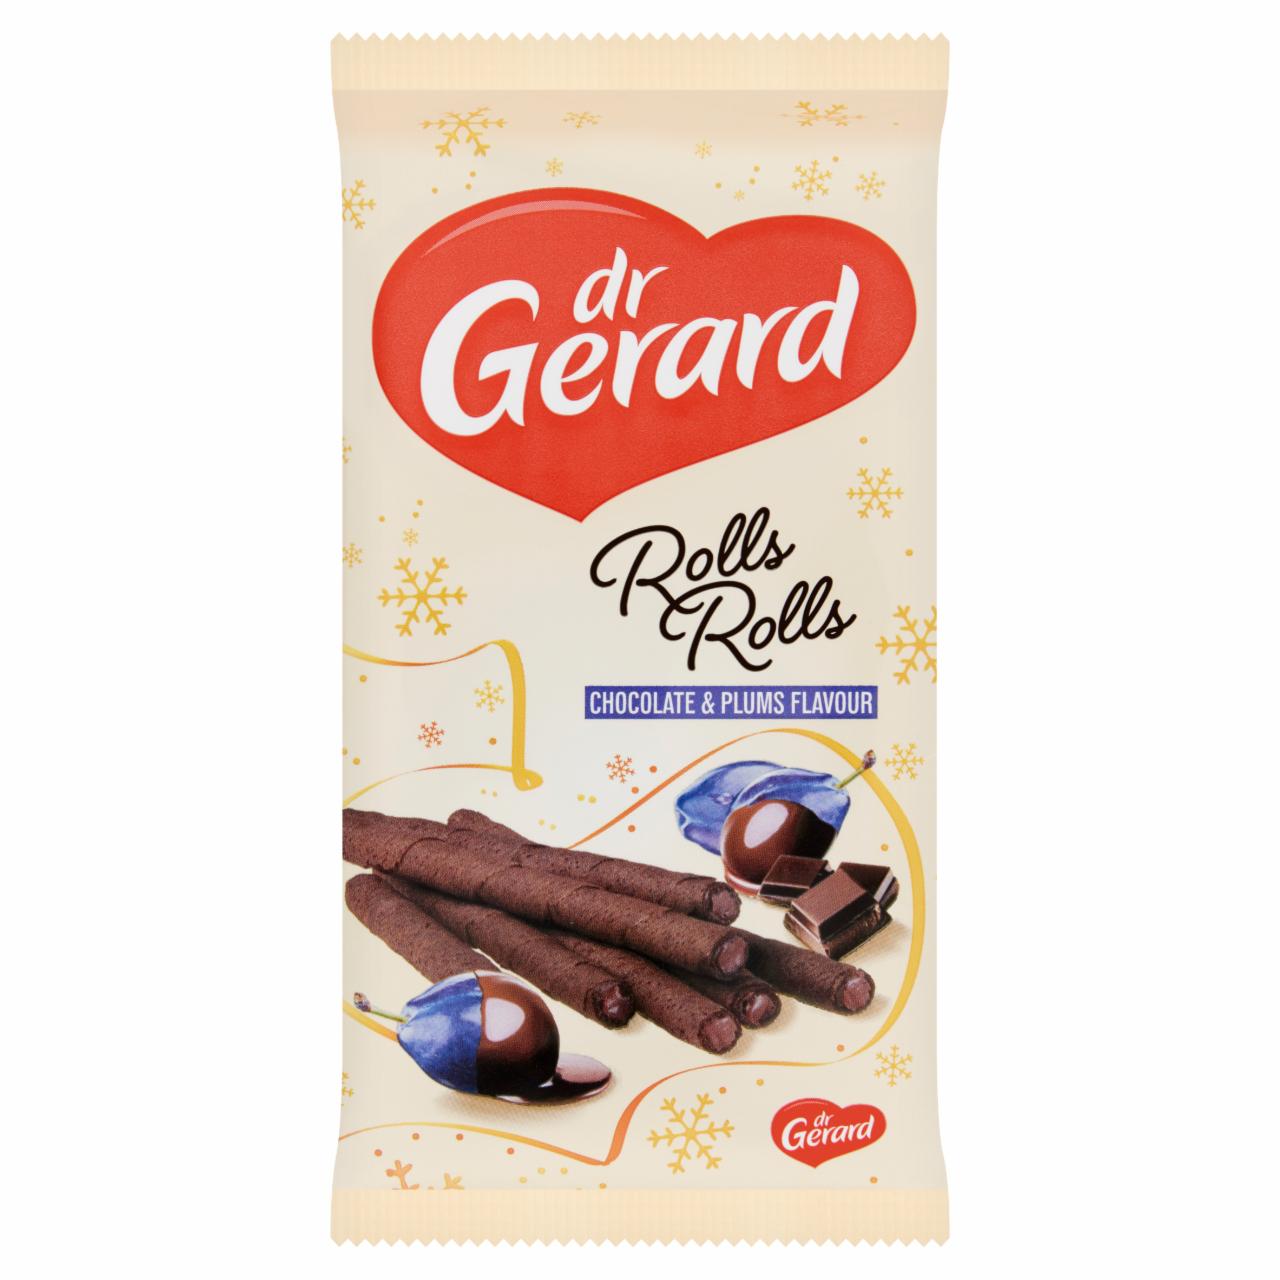 Képek - Dr Gerard Rolls Rolls kakaós ostyarúd csokoládés szilva ízű krémmel 160 g